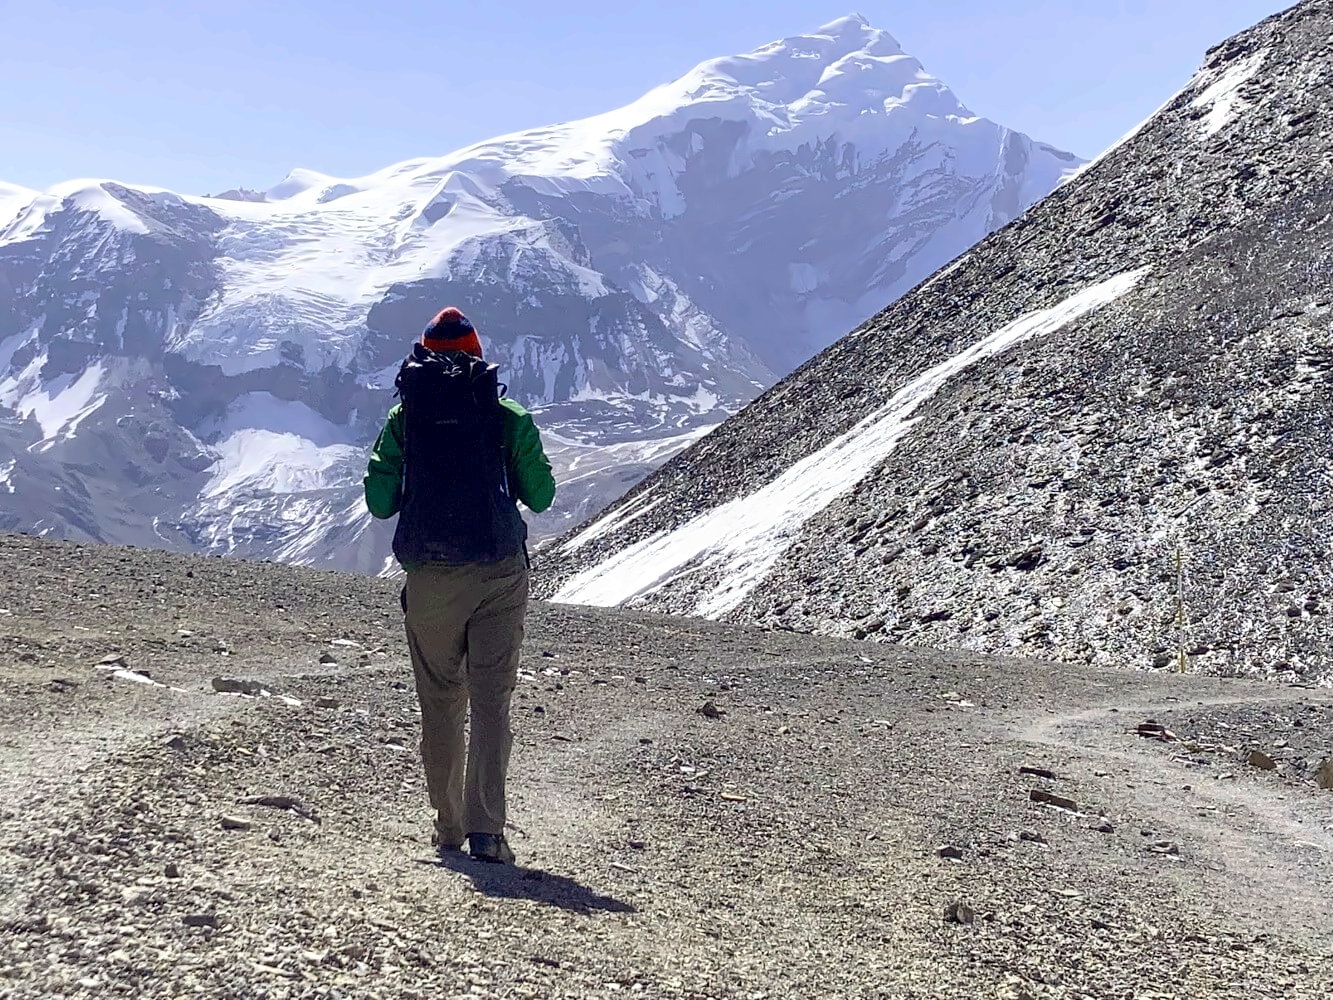 Mit leichter Packliste auf Mehrtageswanderung im Himalaya Gebirge in Nepal.